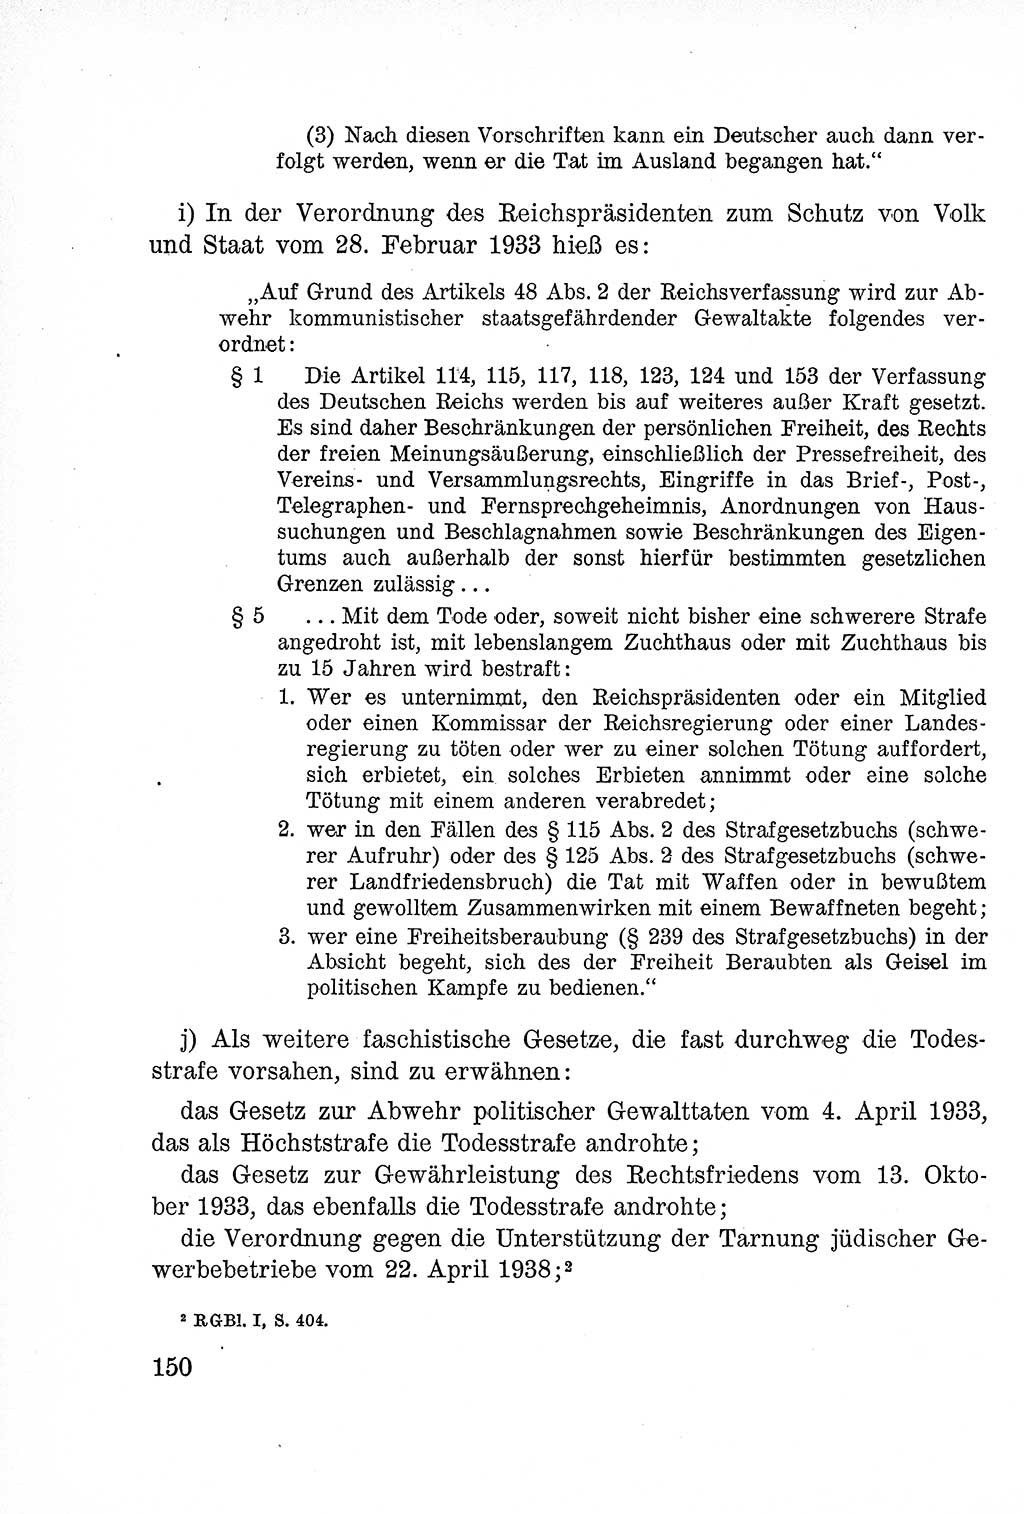 Lehrbuch des Strafrechts der Deutschen Demokratischen Republik (DDR), Allgemeiner Teil 1957, Seite 150 (Lb. Strafr. DDR AT 1957, S. 150)